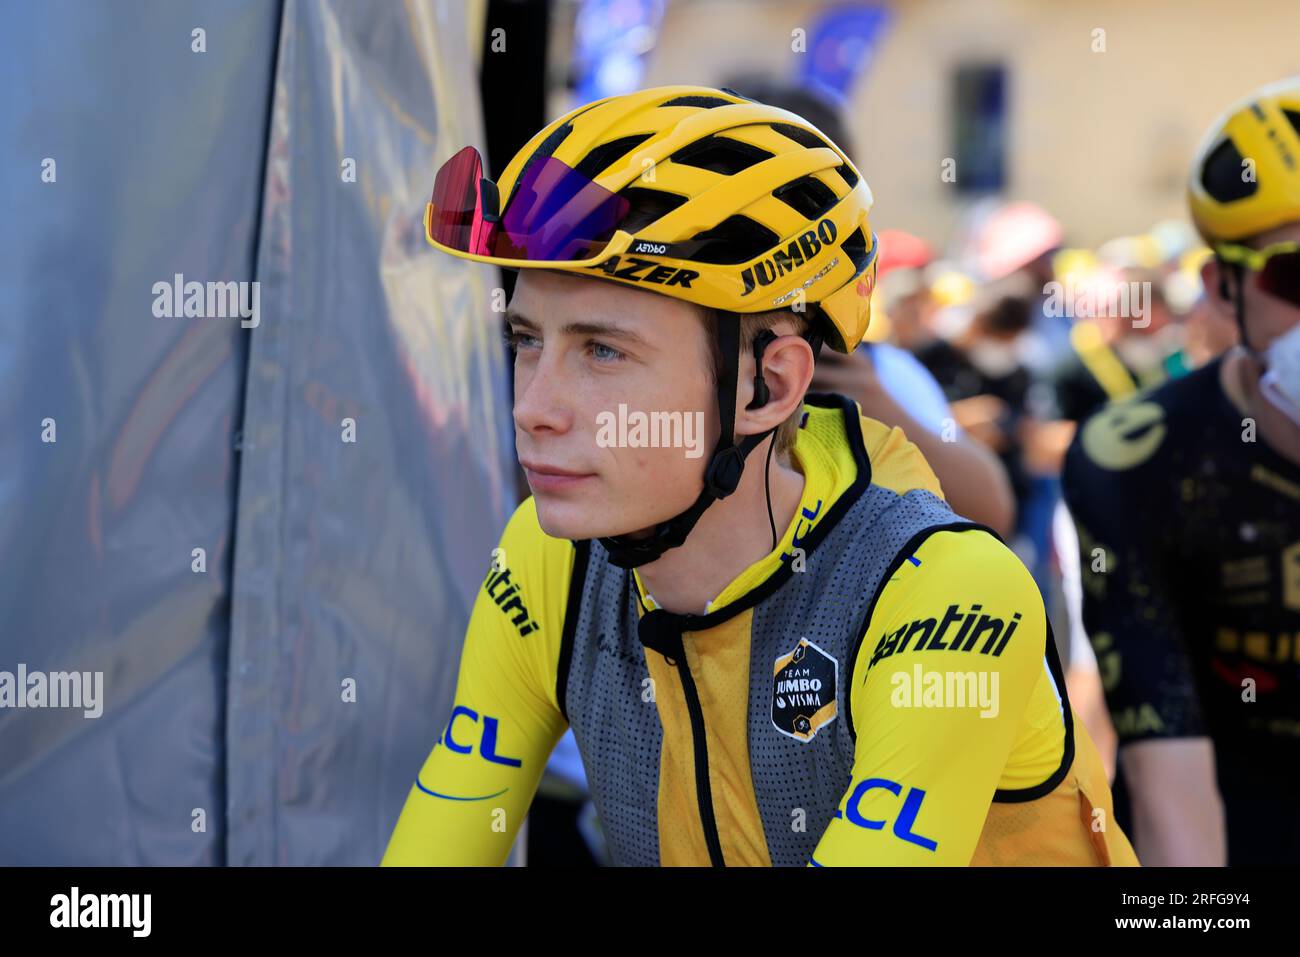 Canicule, le coureur cycliste danois maillot jaune Jonas Vingegaard s’est mis à l’ombre avant le départ de la 9ème étape du Tour de France le 9 juille Stock Photo